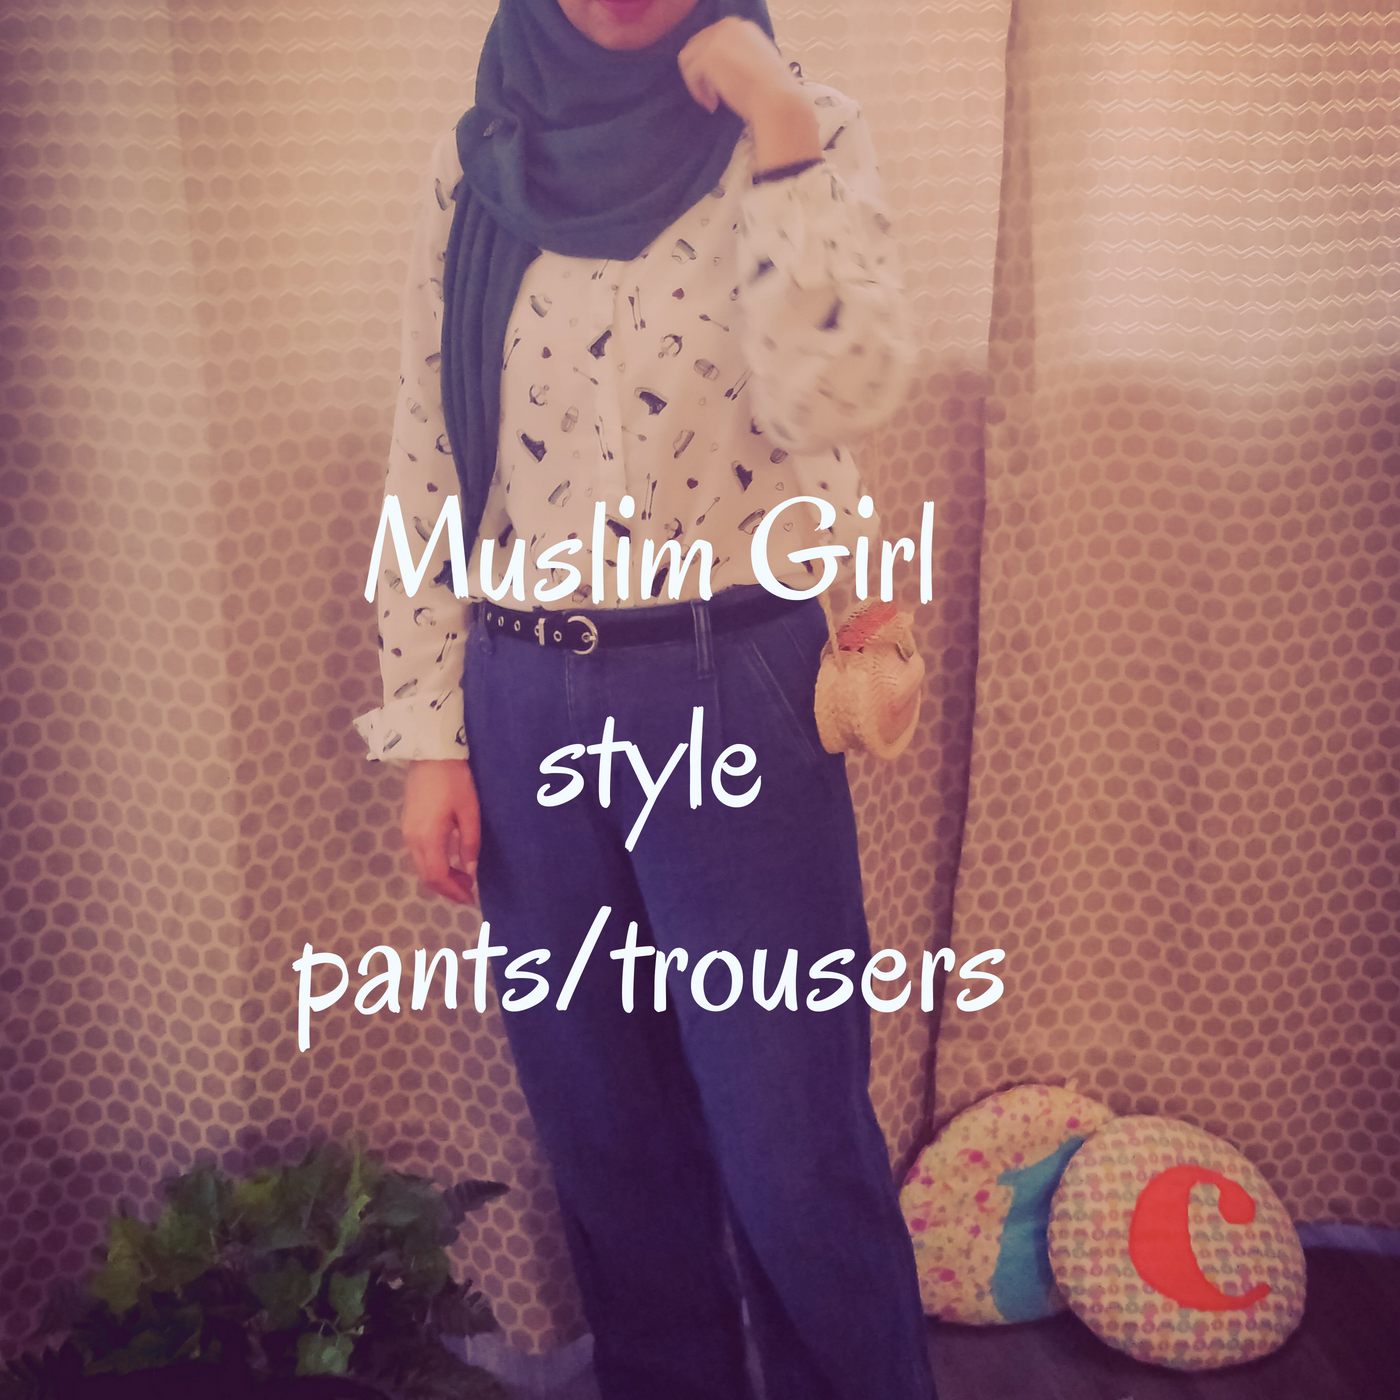 Muslim Girl style pants/trousers #MuslimFashion